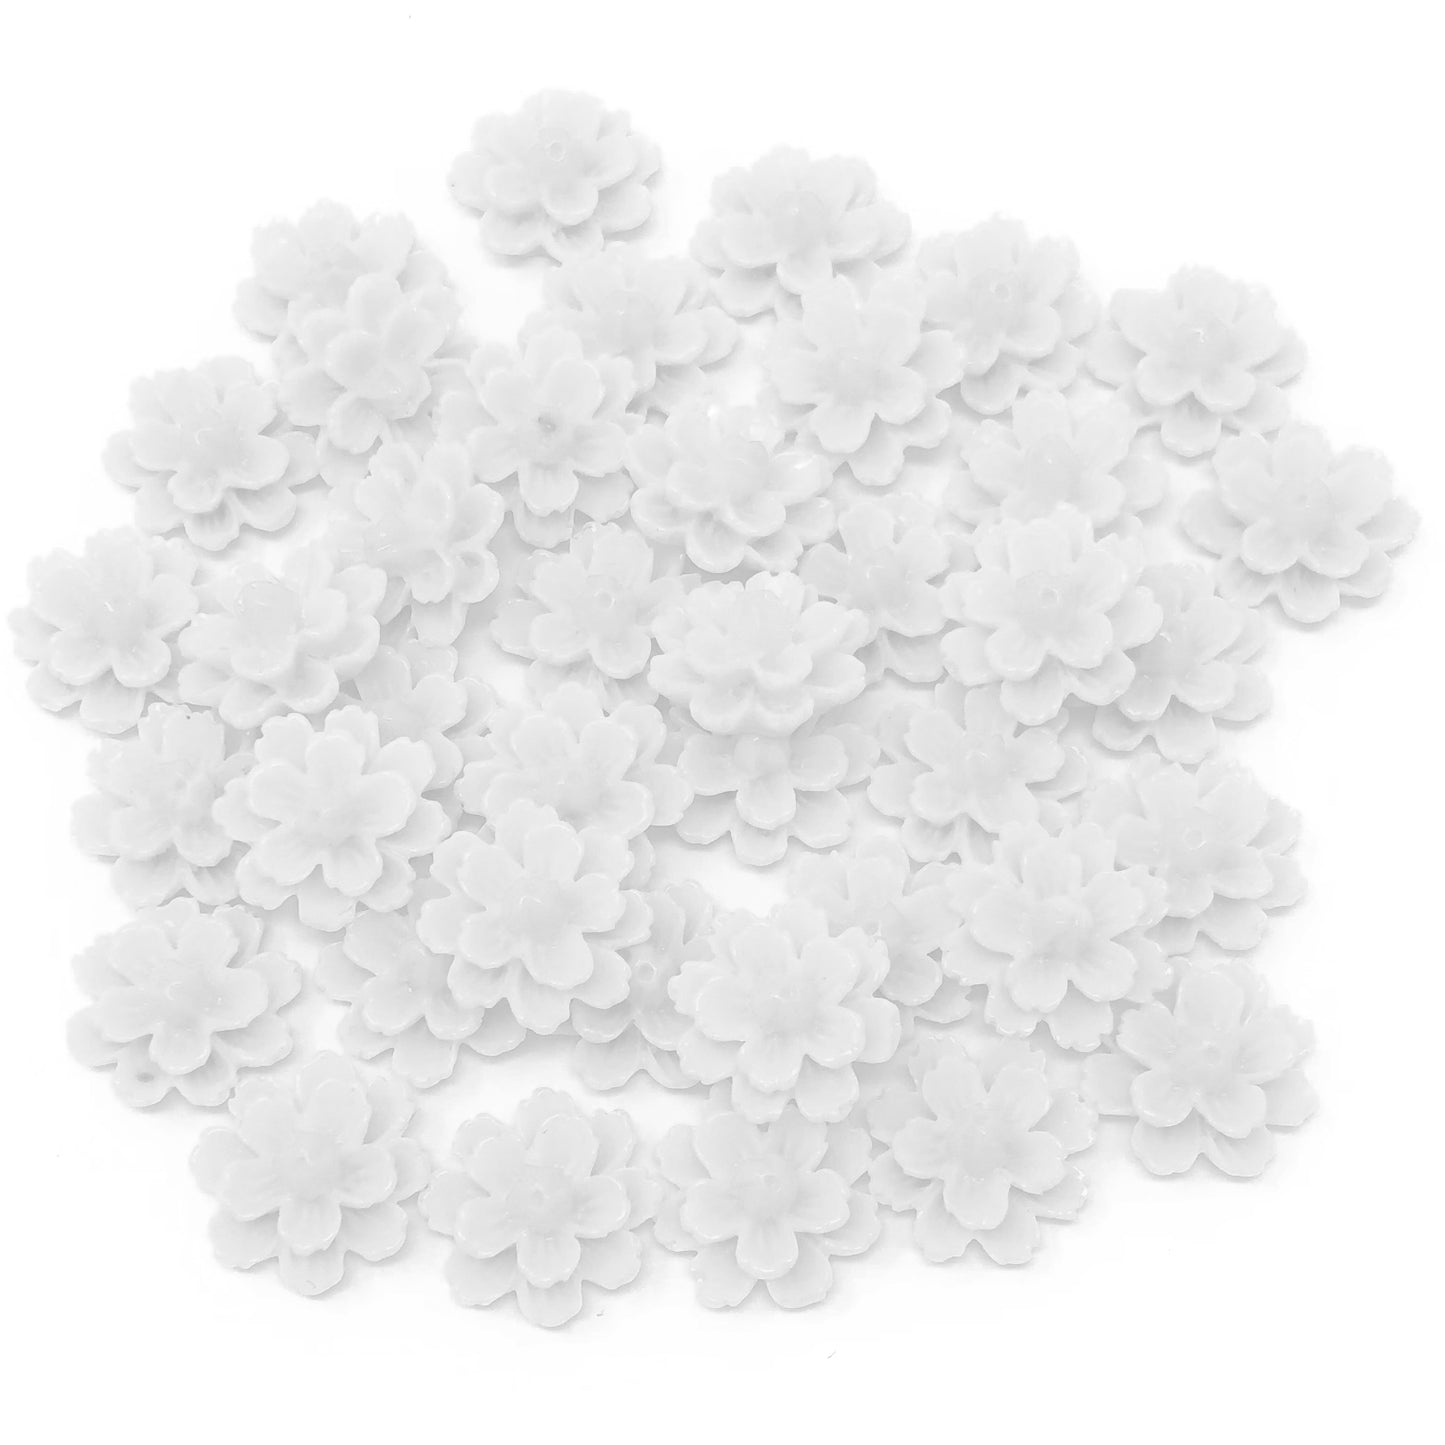 White 13mm Resin Flower Flatbacks - Pack of 40